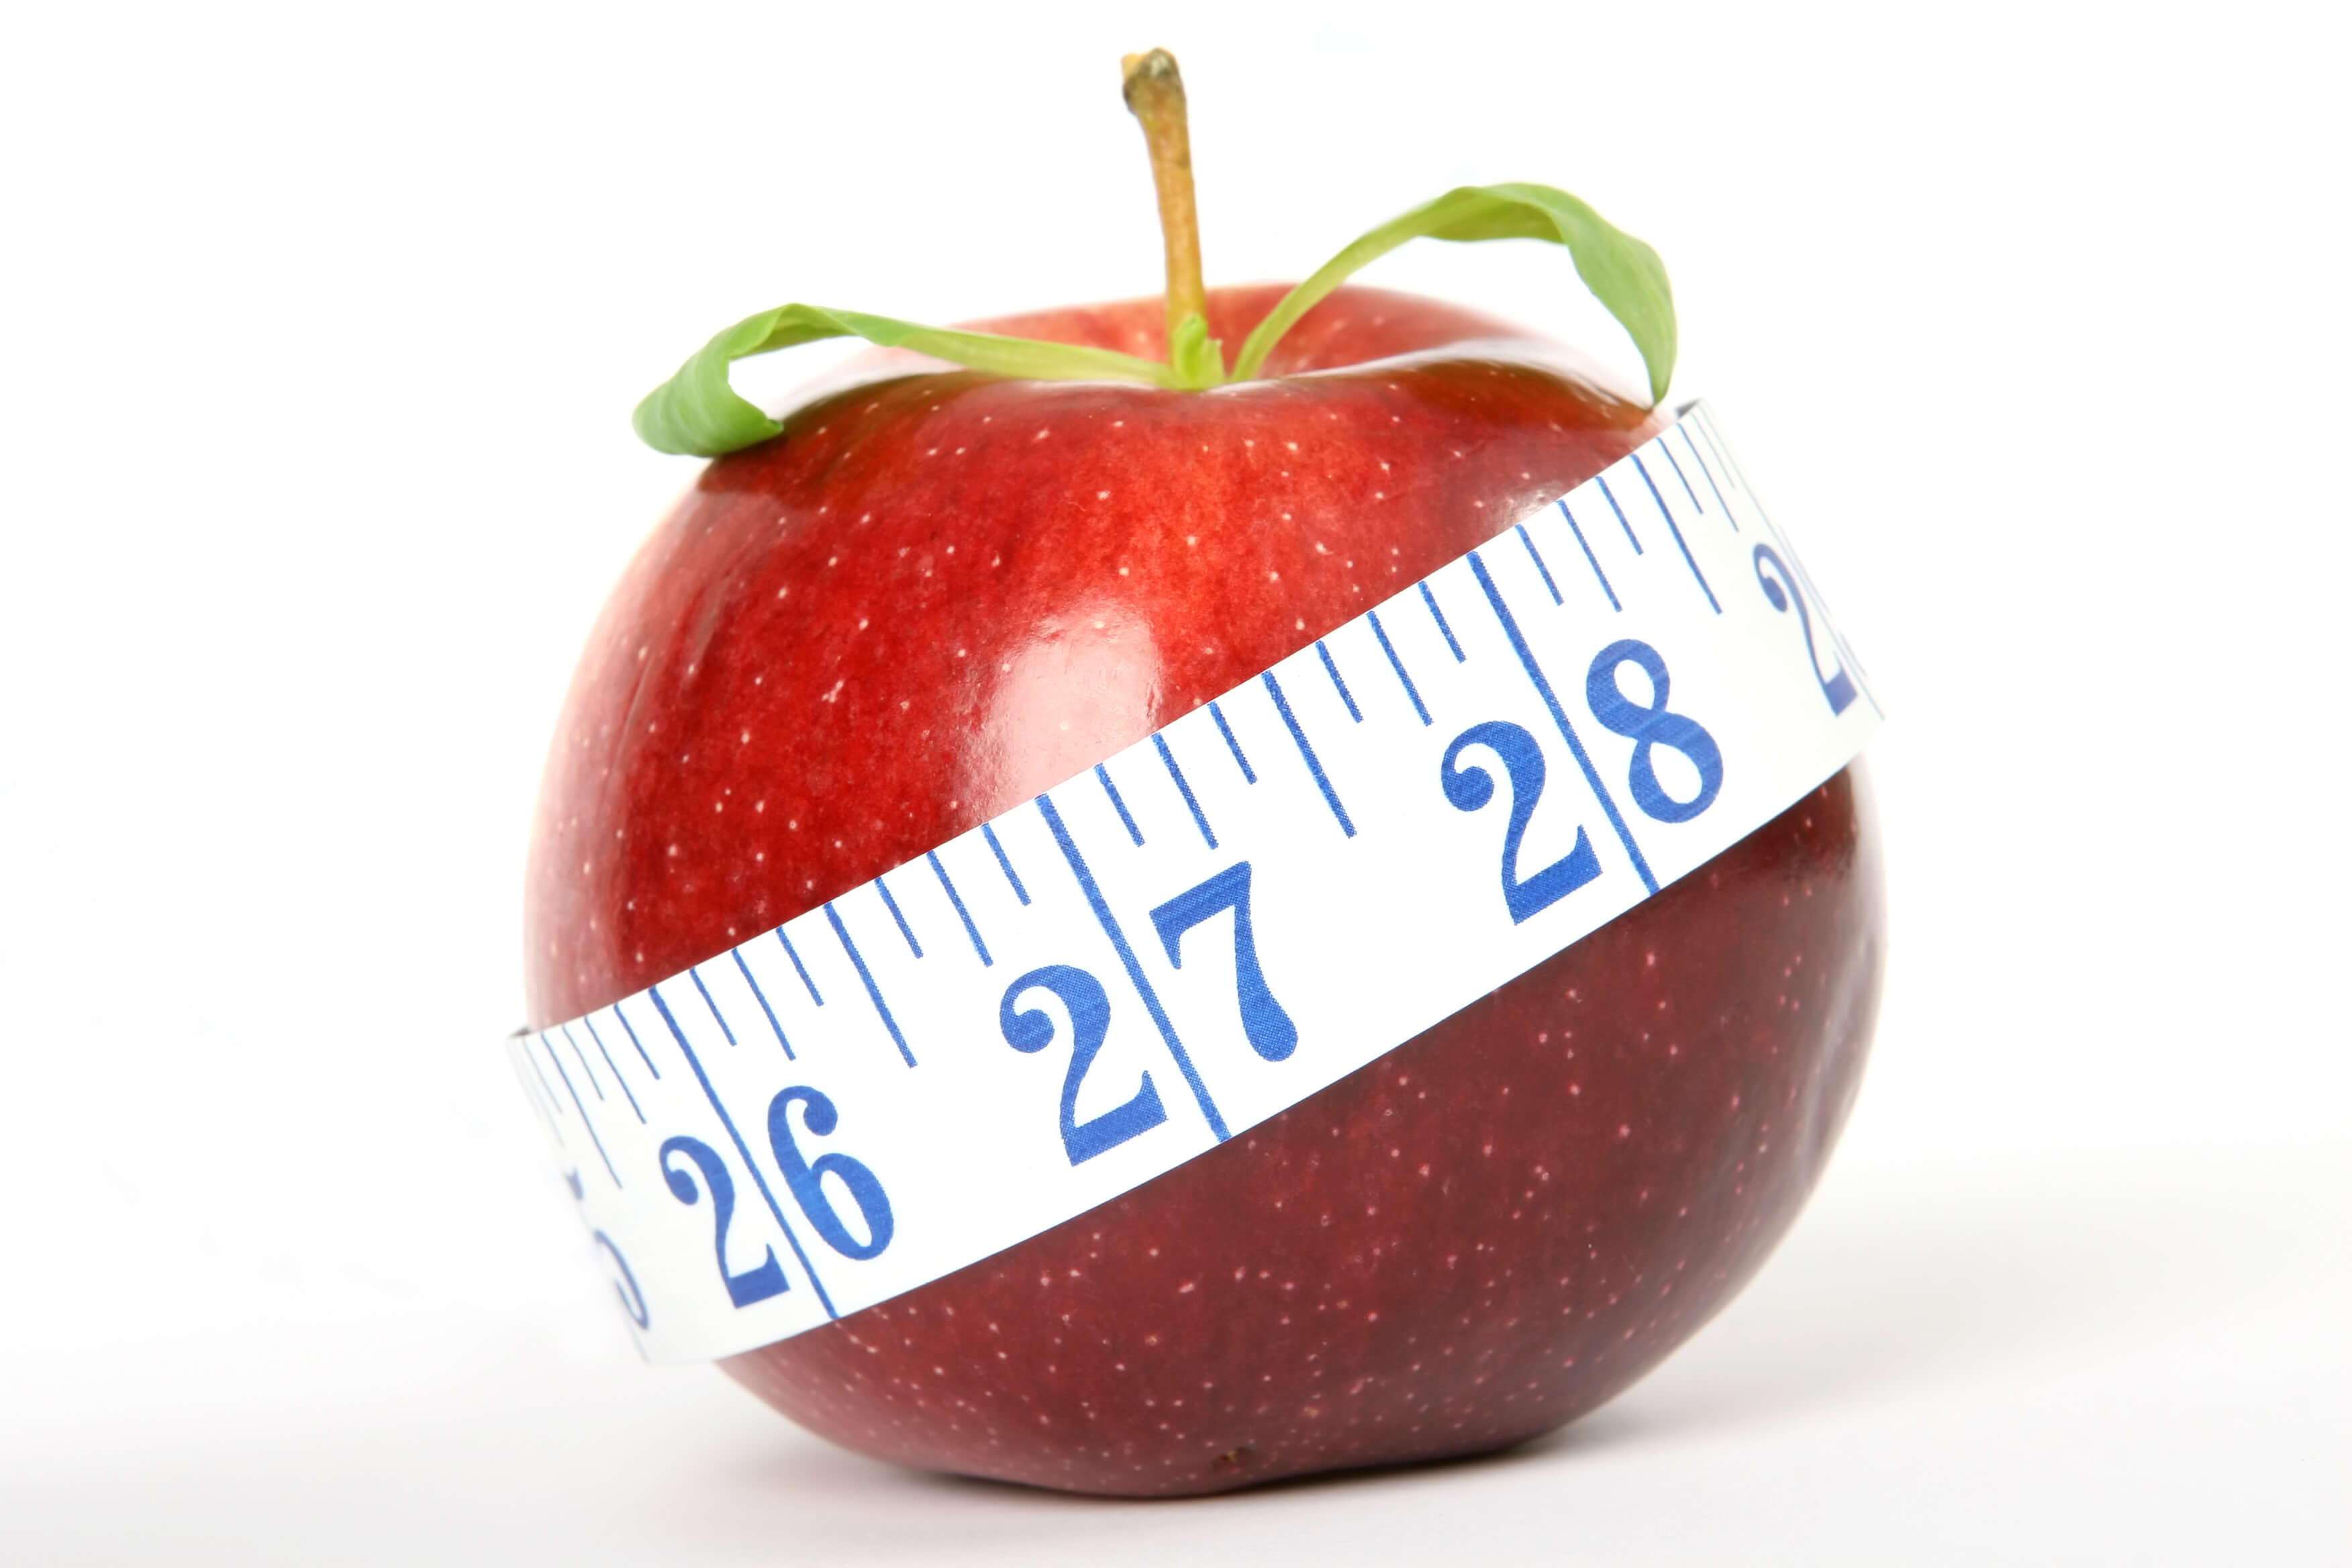 دروغ های کاهش وزن و لاغری که به خودمان می گوییم! - 16 - دروغ های کاهش وزن - عادات غذایی